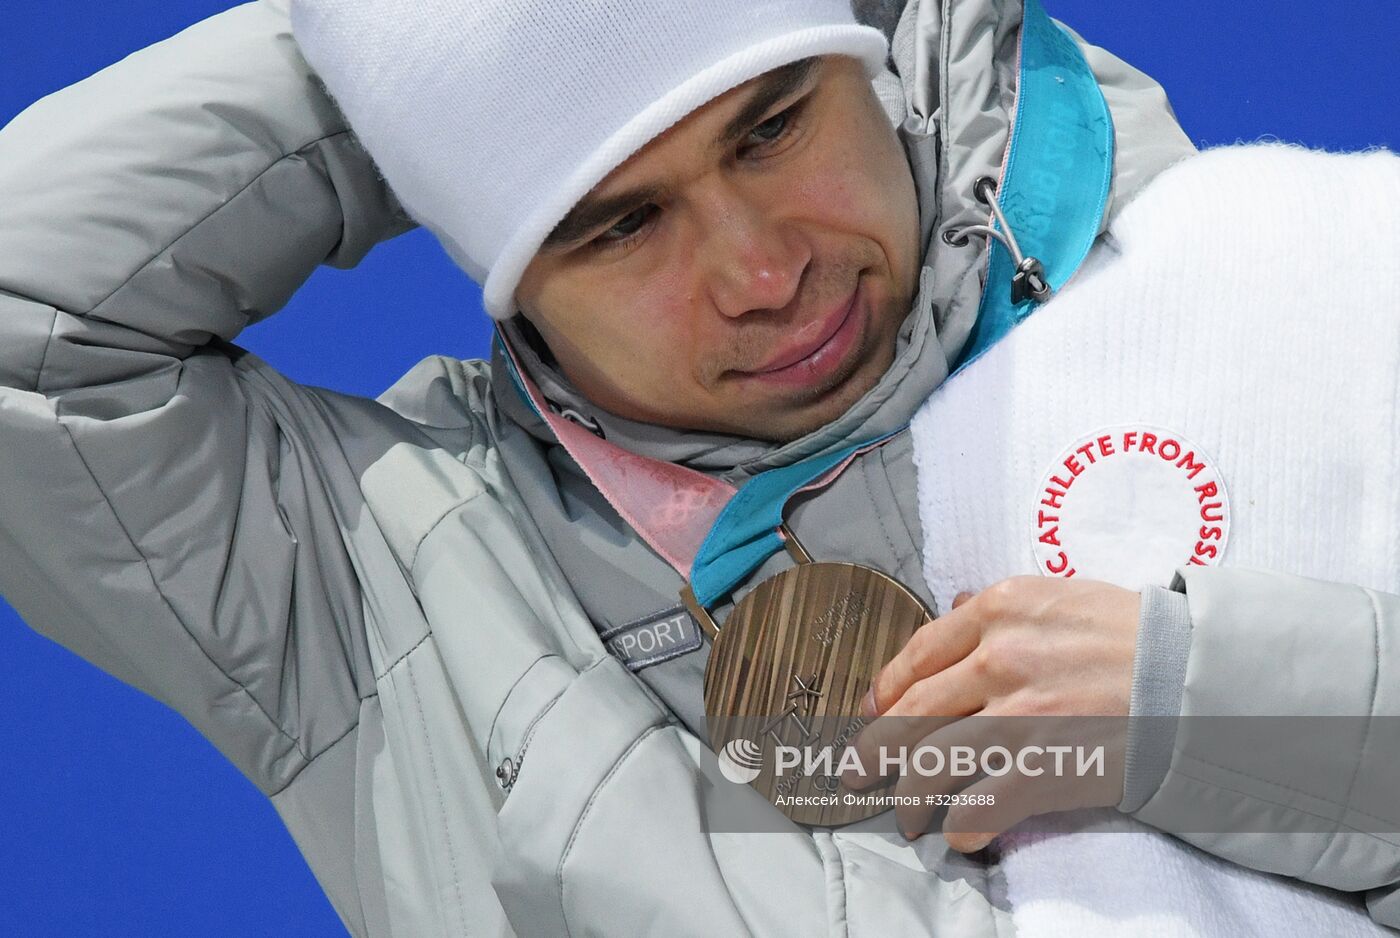 Олимпиада 2018. Награждение С. Елистратова бронзовой медалью